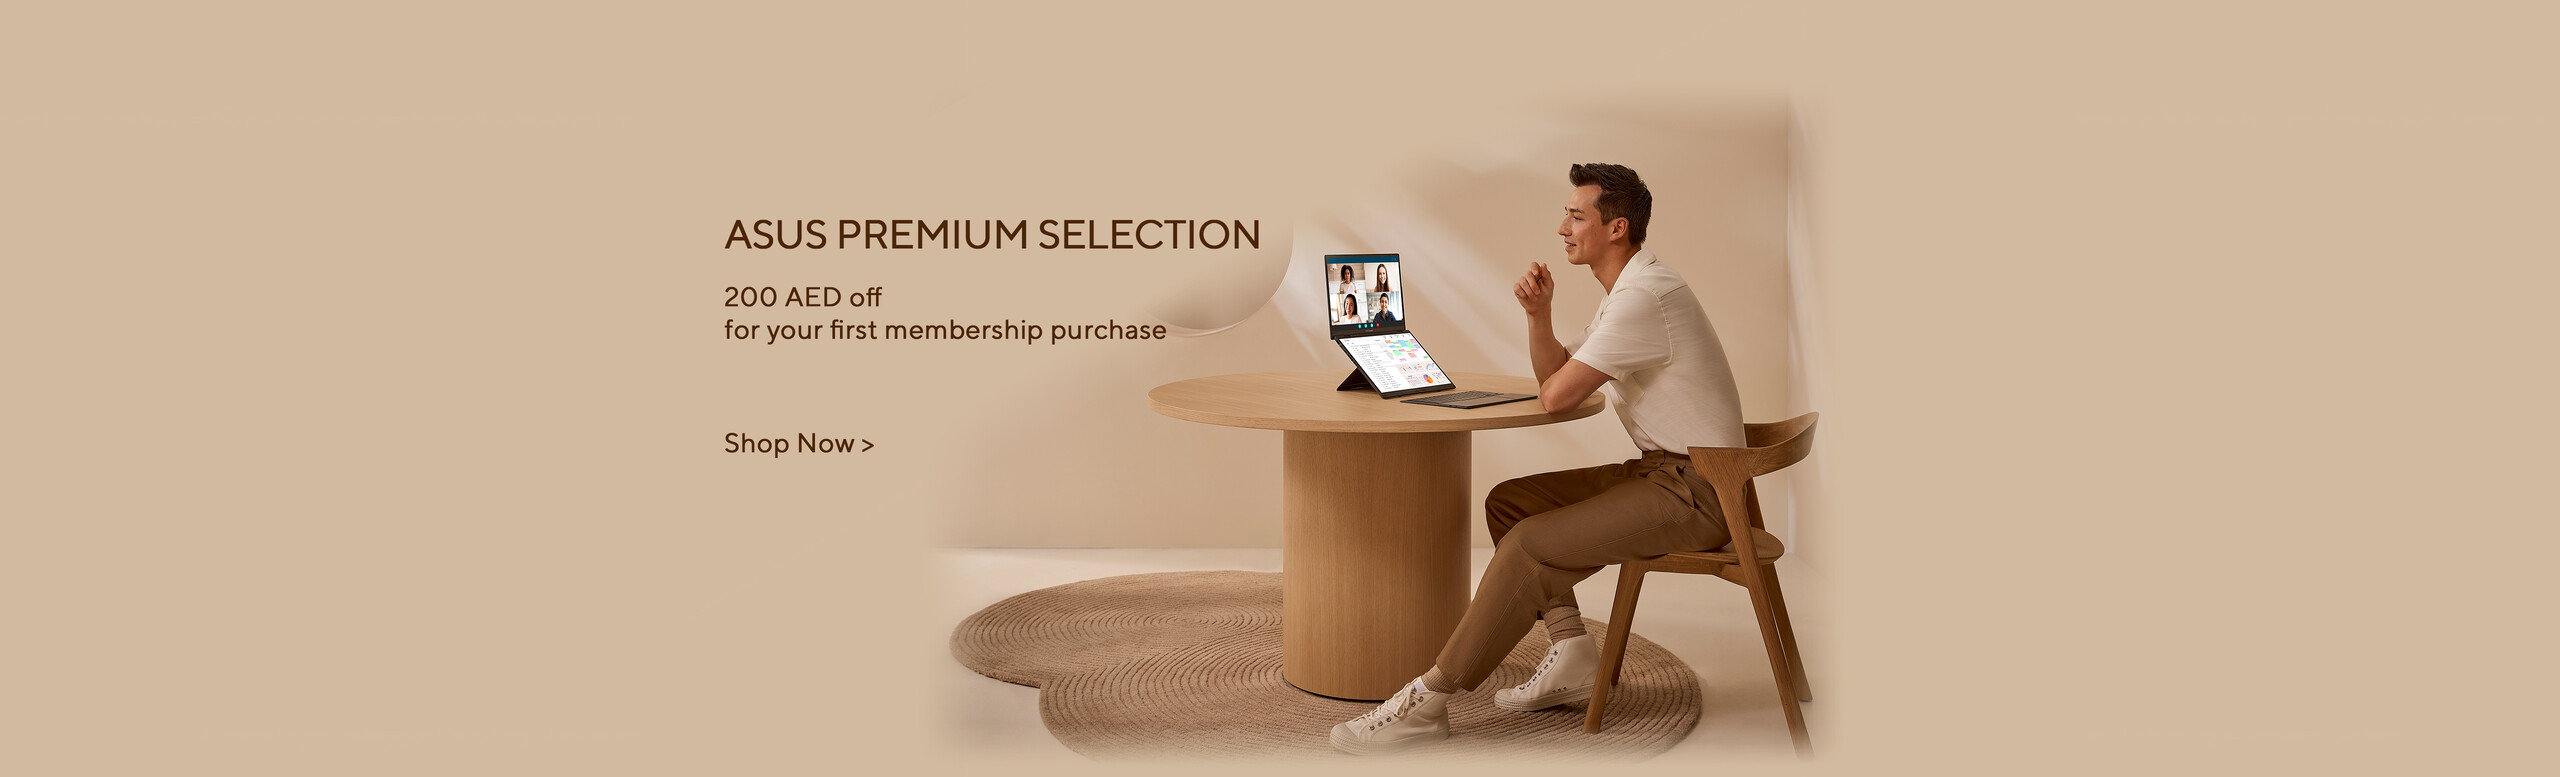 ASUS Premium Selection